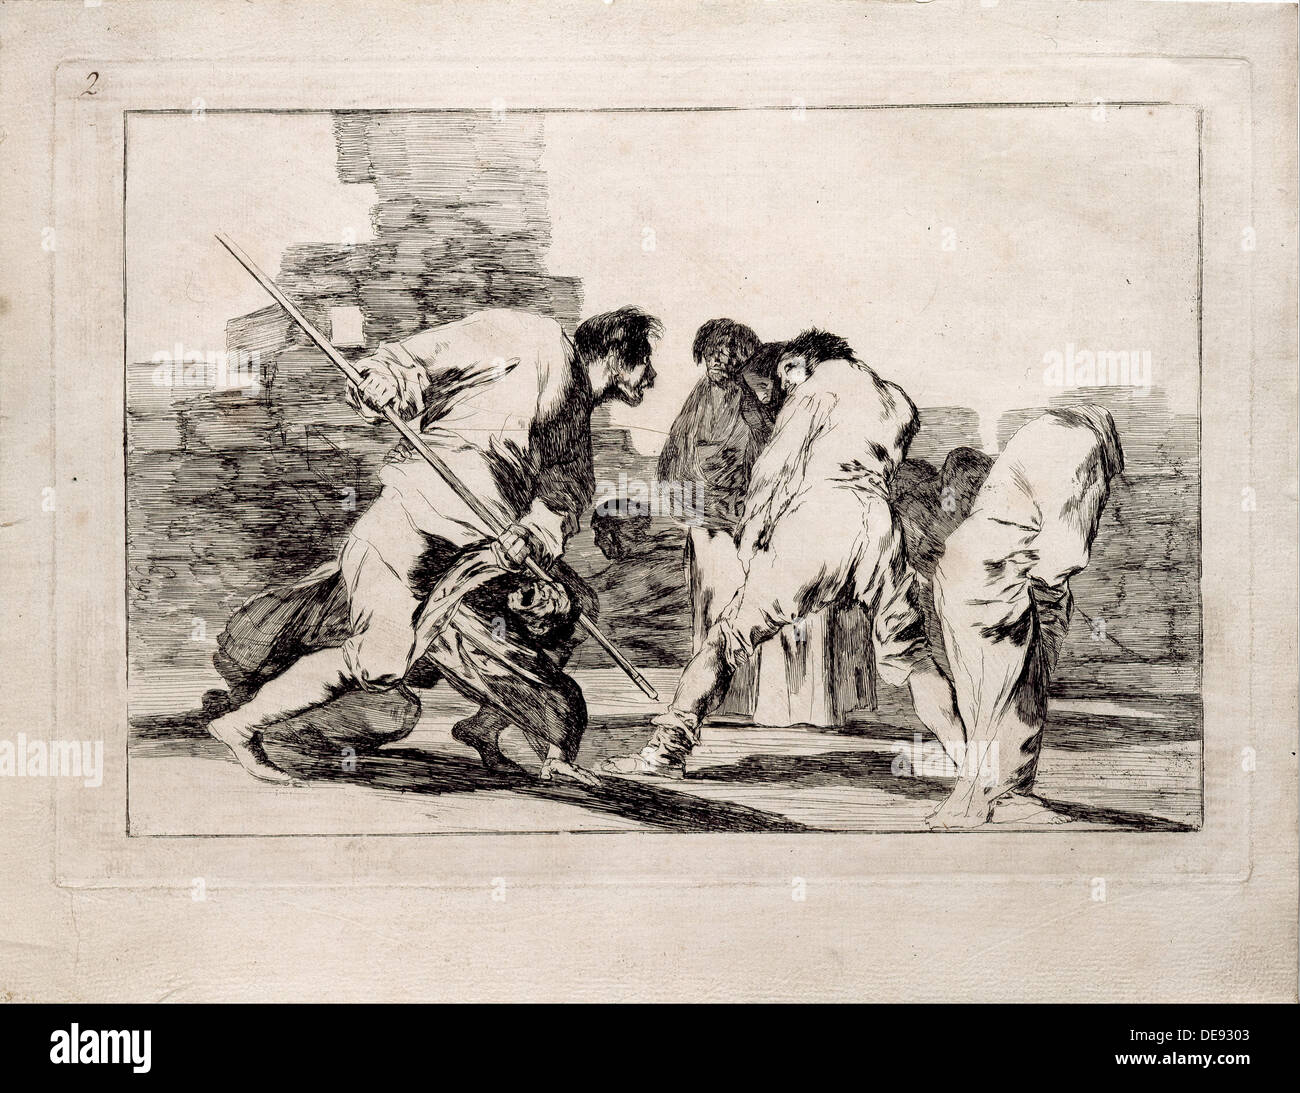 Folie cruelle (de la série Los disparates (Follies), 1815-1819. Artiste : Goya, Francisco de (1746-1828) Banque D'Images